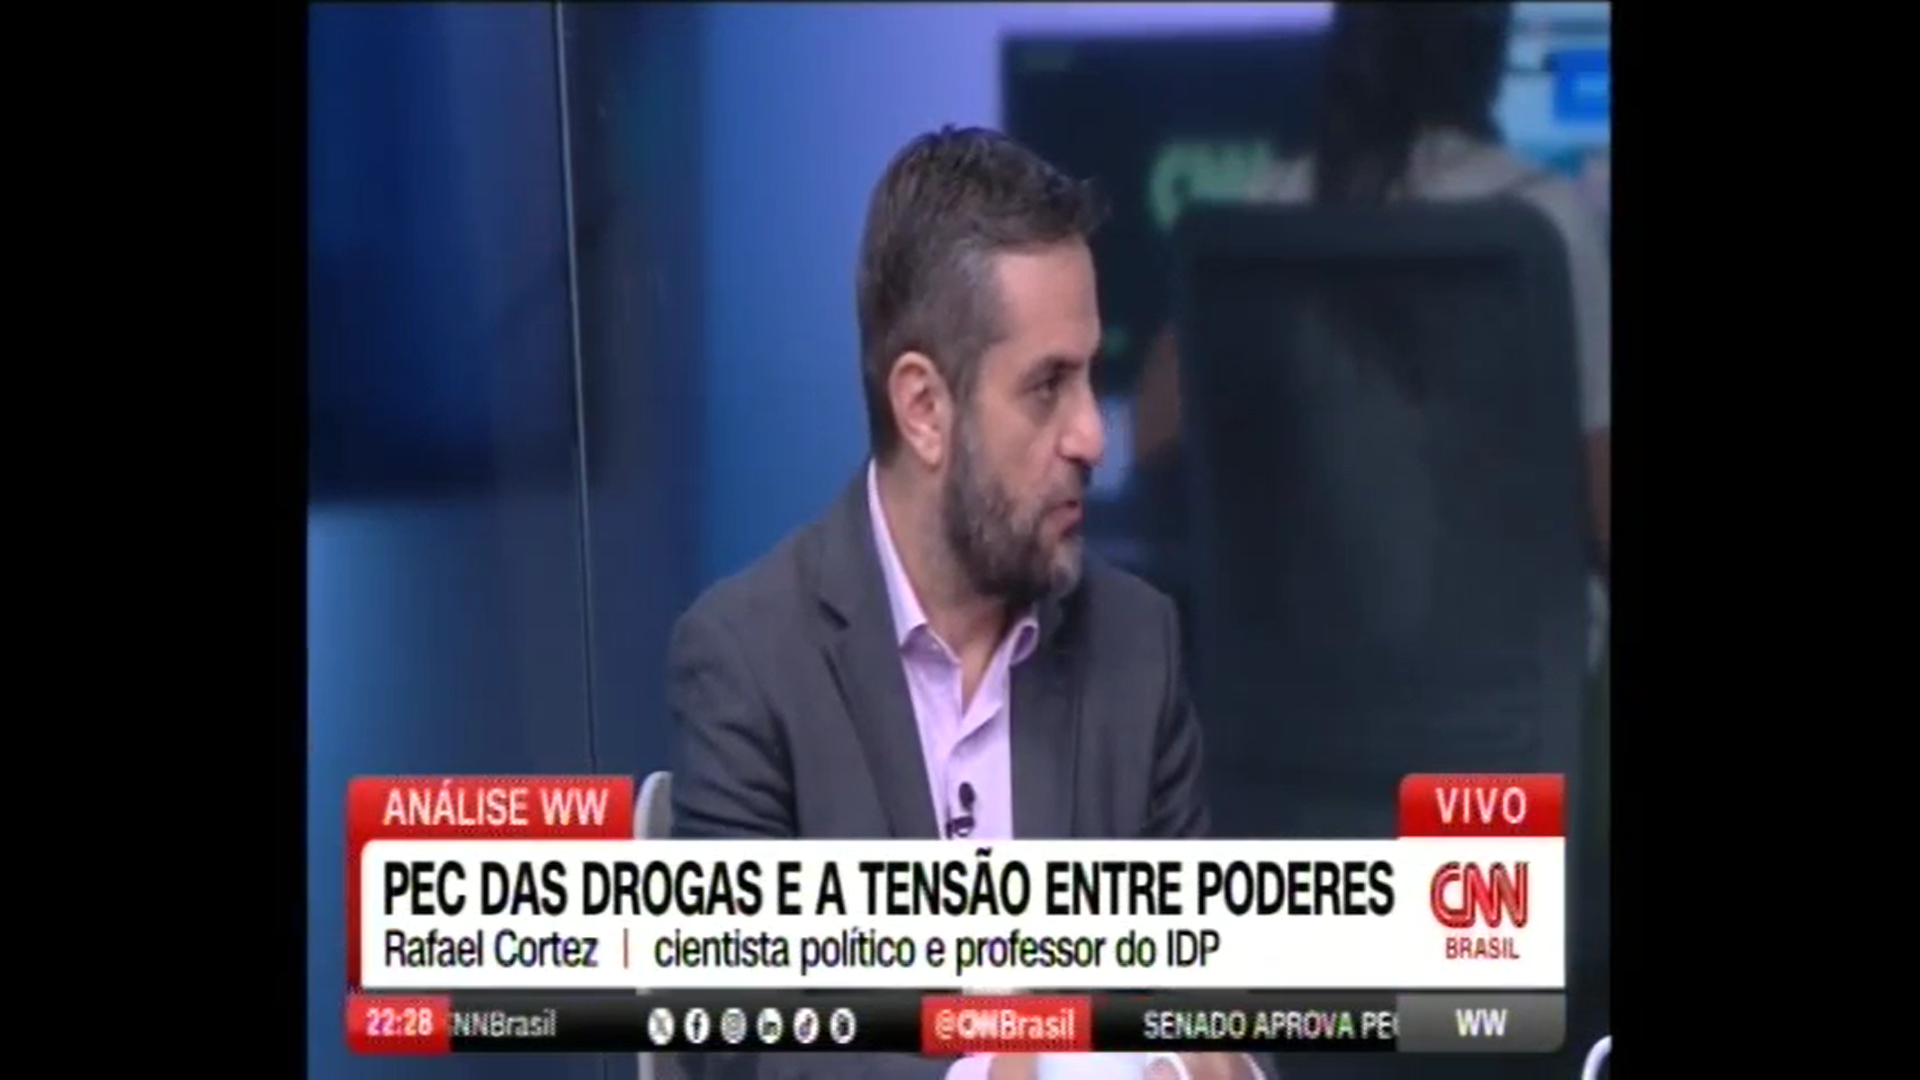 PEC das drogas e a tensão entre poderes - Rafael Cortez, cientista político e professor do IDP - CNN Brasil